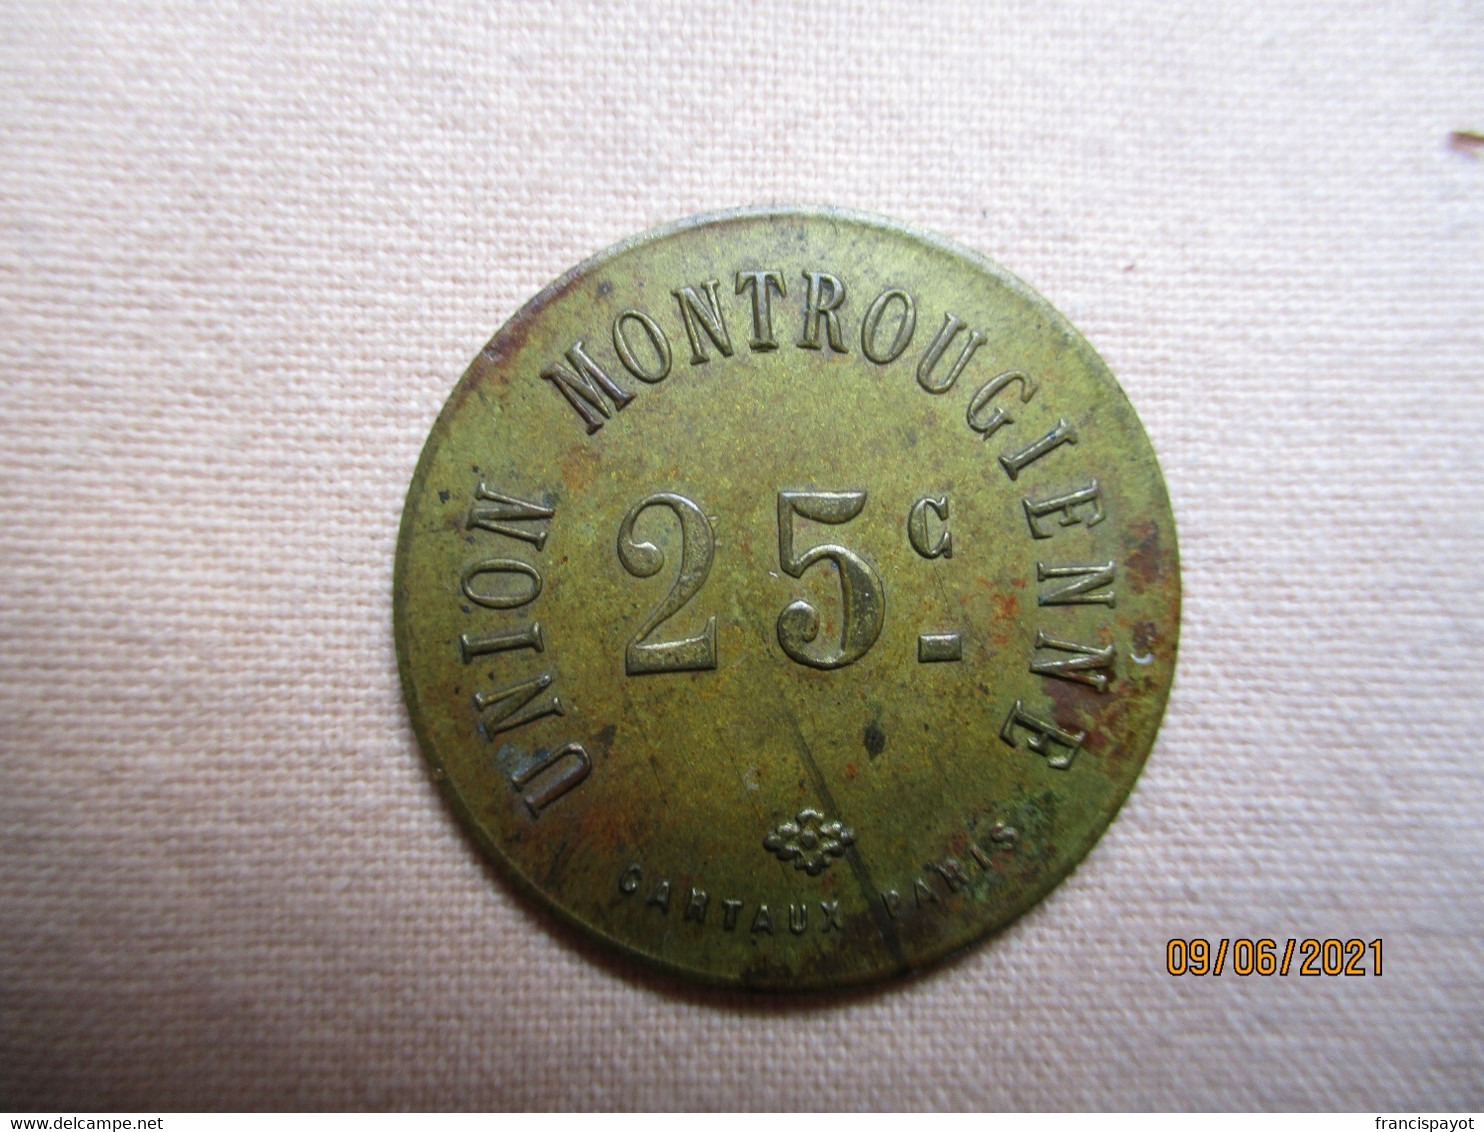 France: Union Montrougienne 25 Centimes - Monedas / De Necesidad